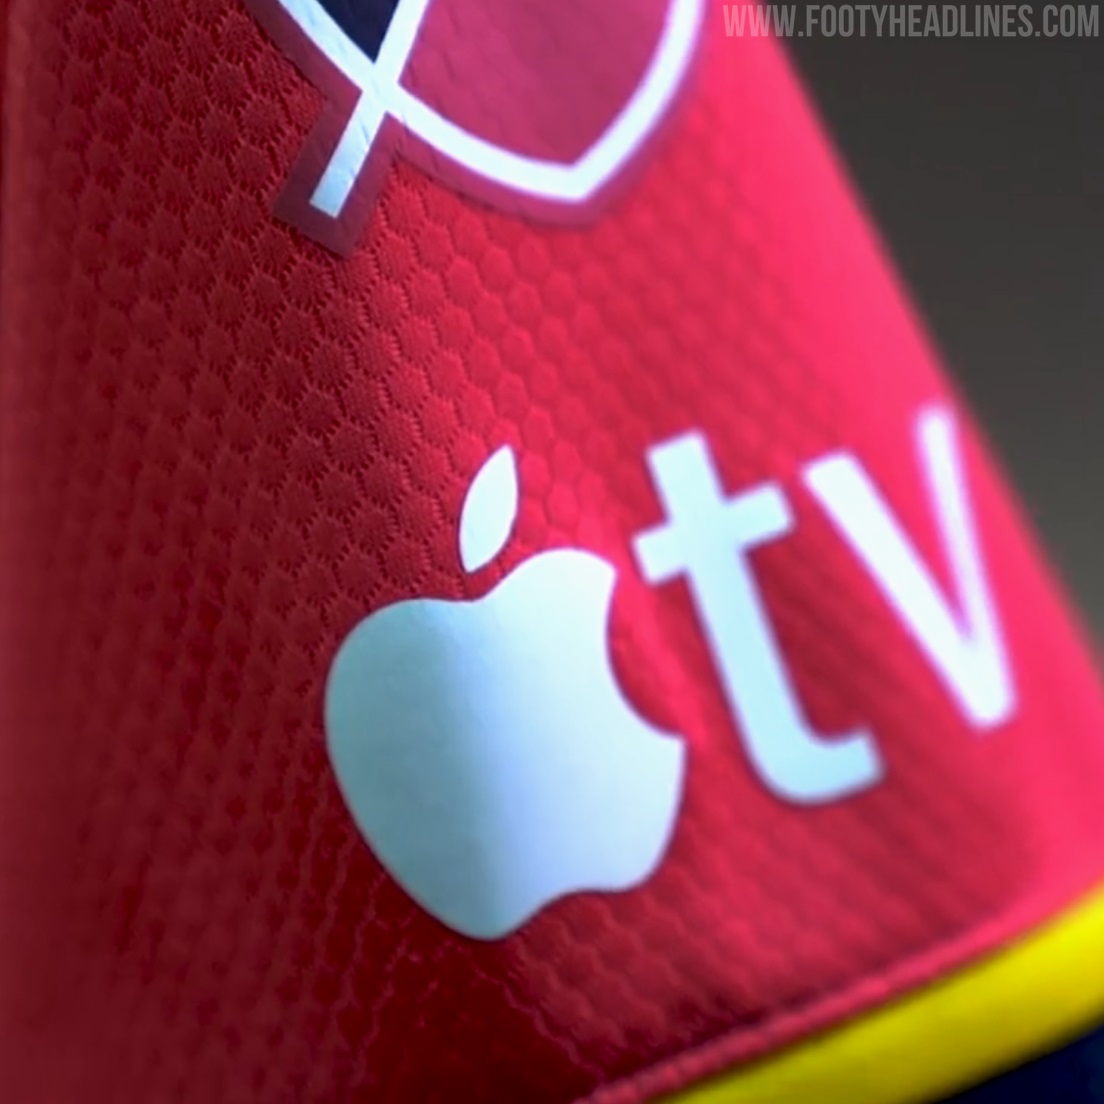 Apple TV Logo to Be Printed On MLS Sleeves in 2023